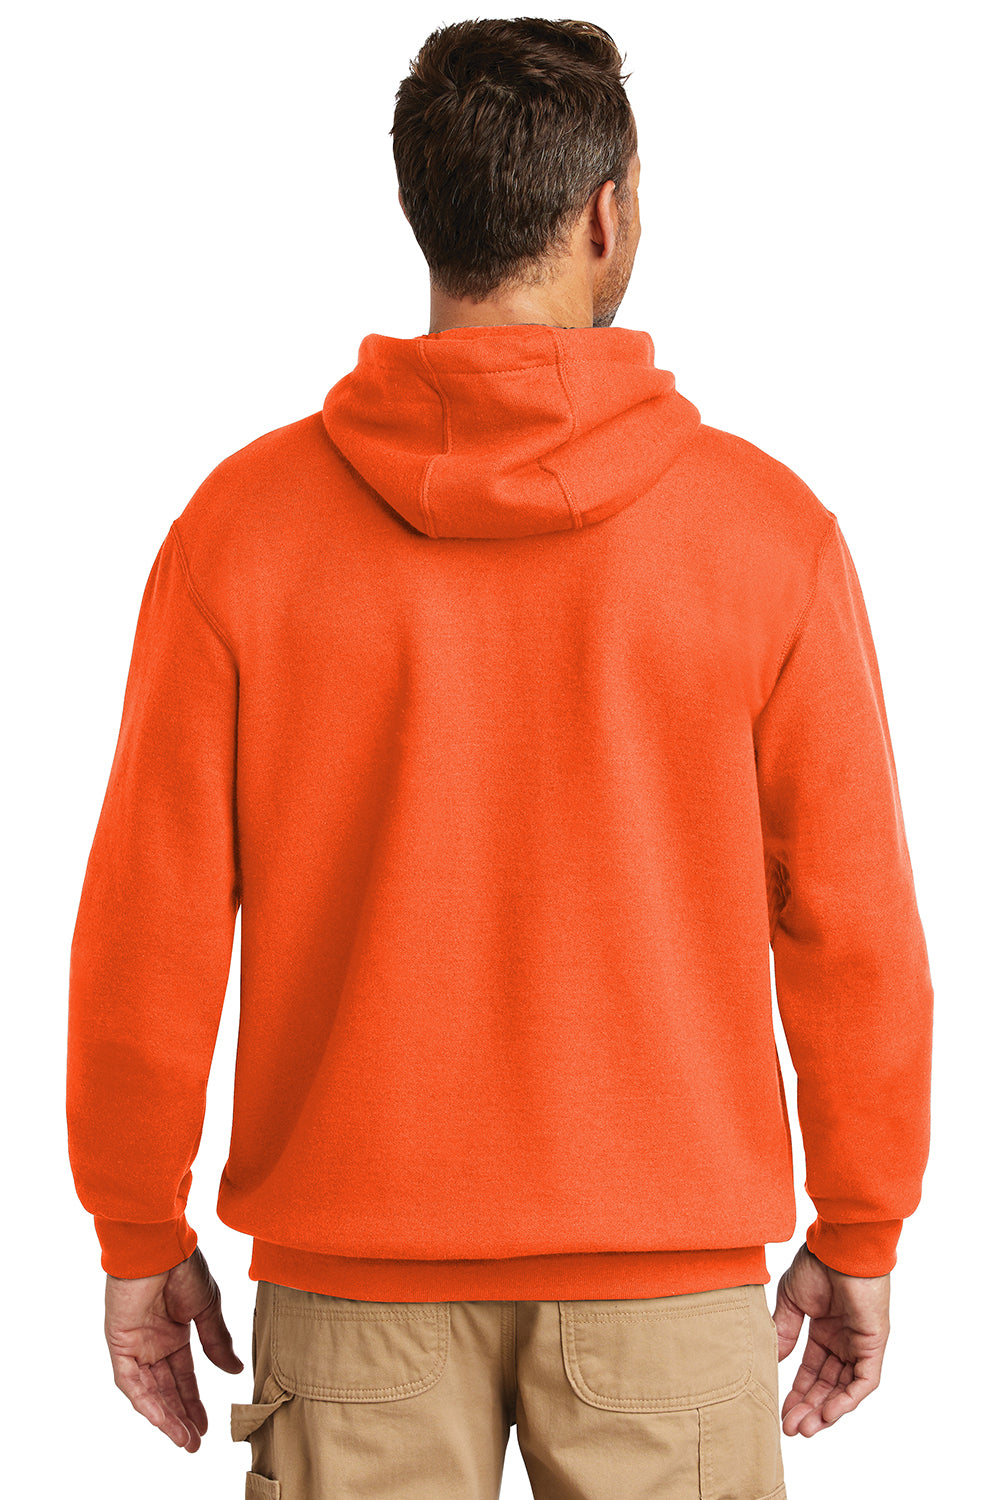 Carhartt CTK121/CTTK121 Mens Hooded Sweatshirt Hoodie Brite Orange Model Back